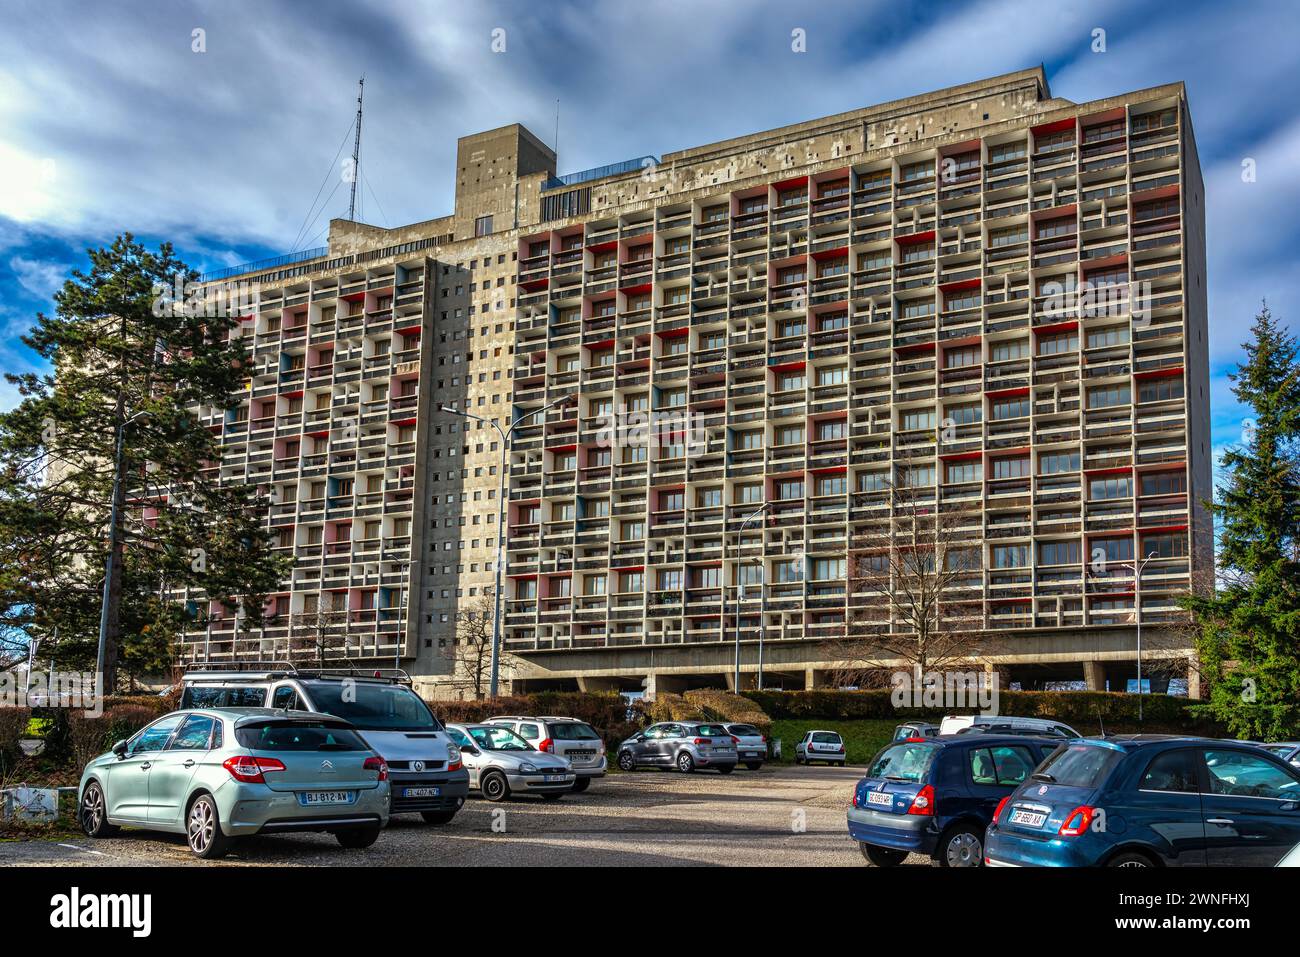 L'Unité d'Habitation de Firminy-Vert, noto anche come Cité Radieuse, è un edificio progettato dall'architetto svizzero le Corbusier.Firminy, Francia Foto Stock